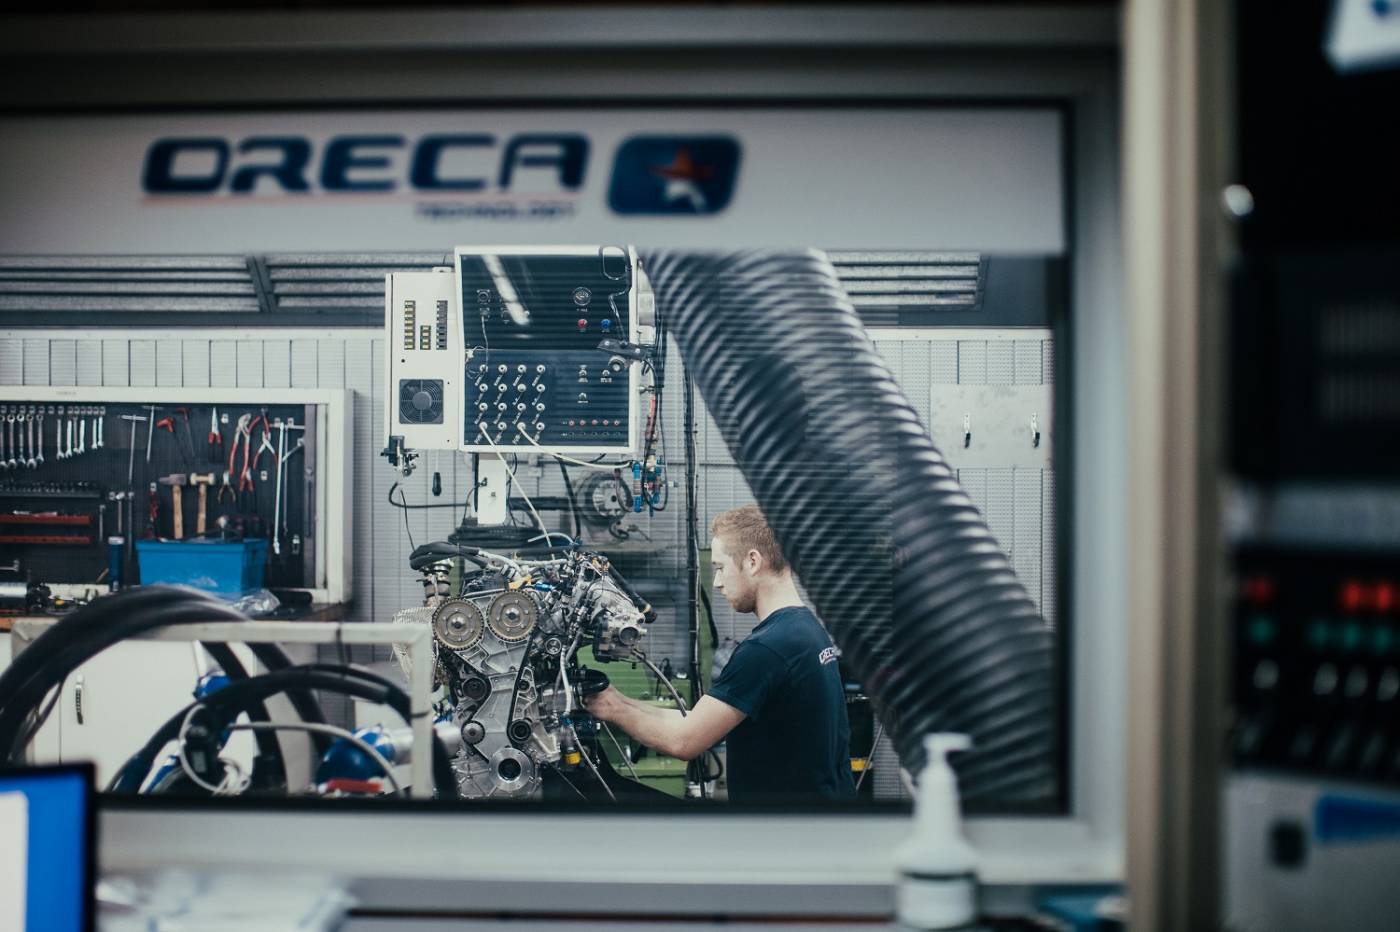 Un nouveau projet ambitieux pour le groupe ORECA : la motorisation à combustion hydrogène